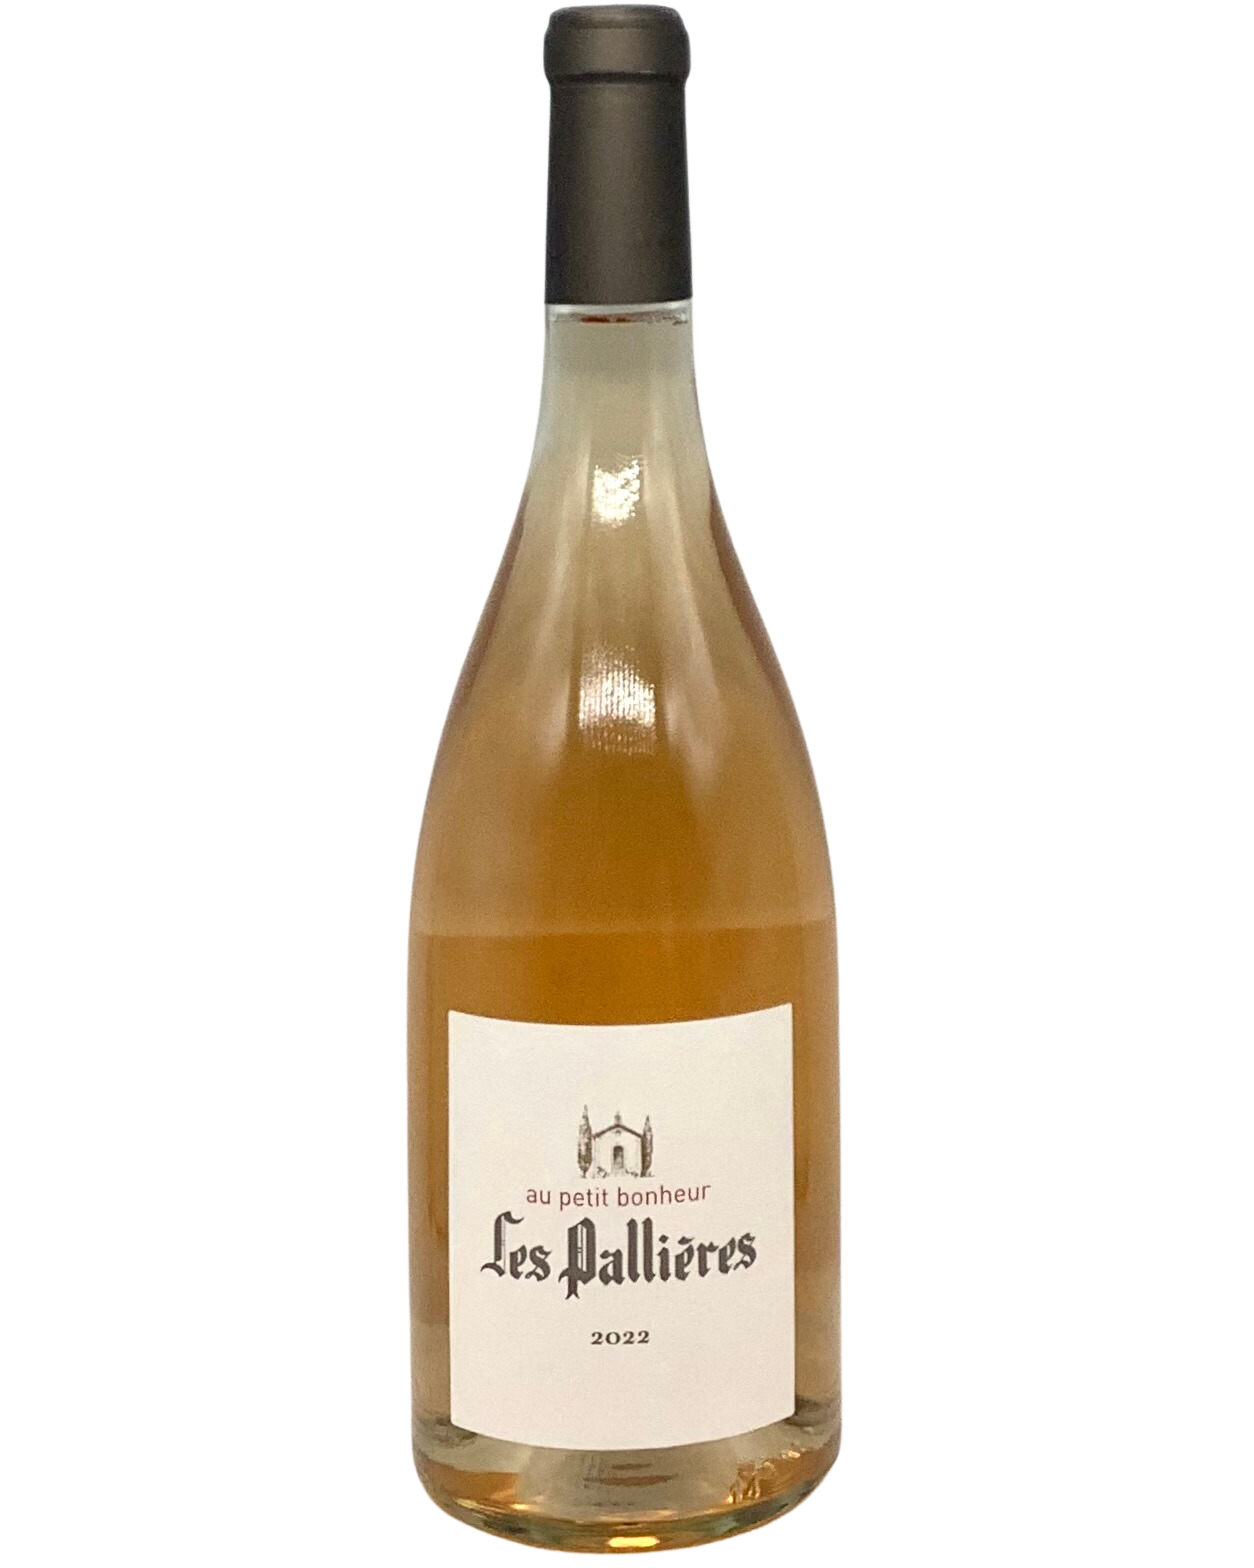 Les Pallières "Au Petit Bonheur" Rosé, Vin de France 2022 organic